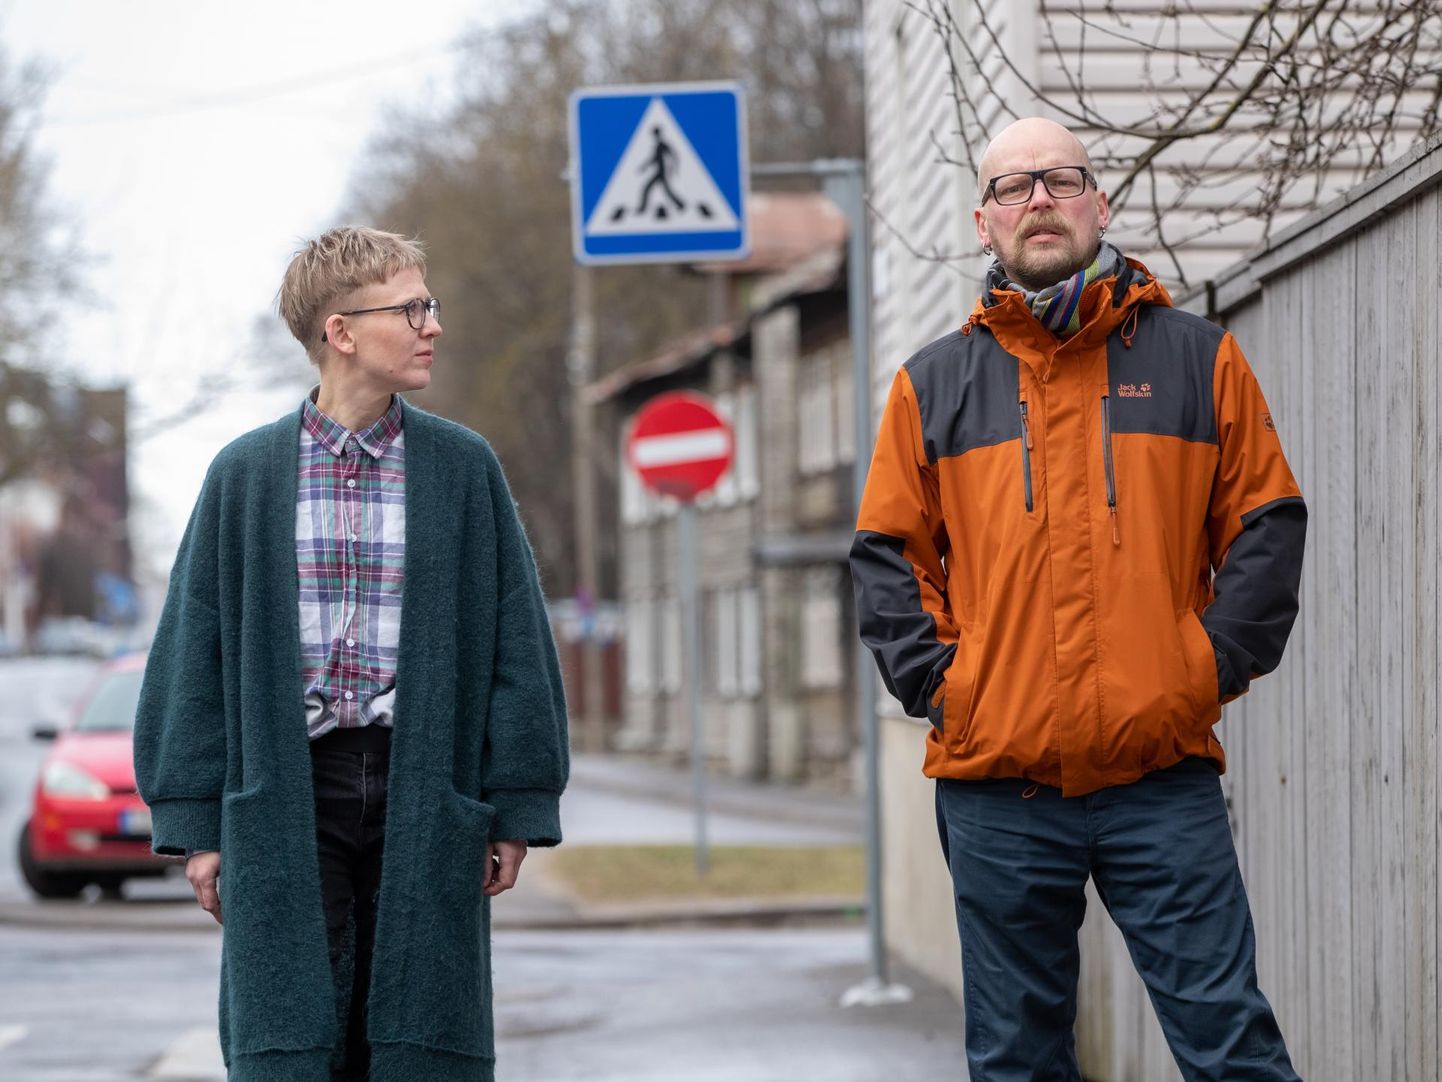 e⁻lektroni eestvedajad Maike Lond Malmborg ja Taavet Jansen.